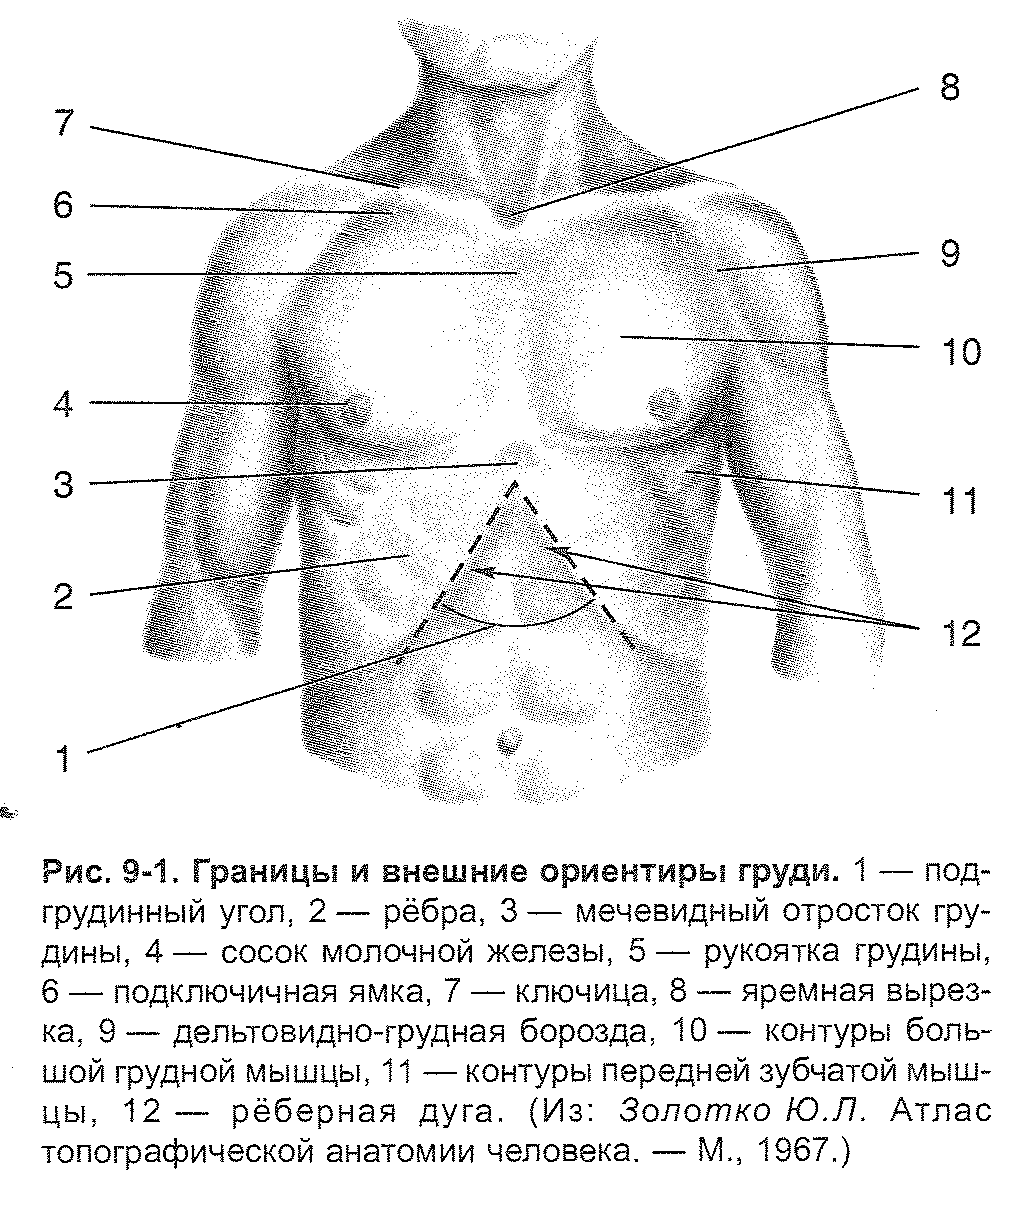 уплотнение в правой груди у мужчин фото 81